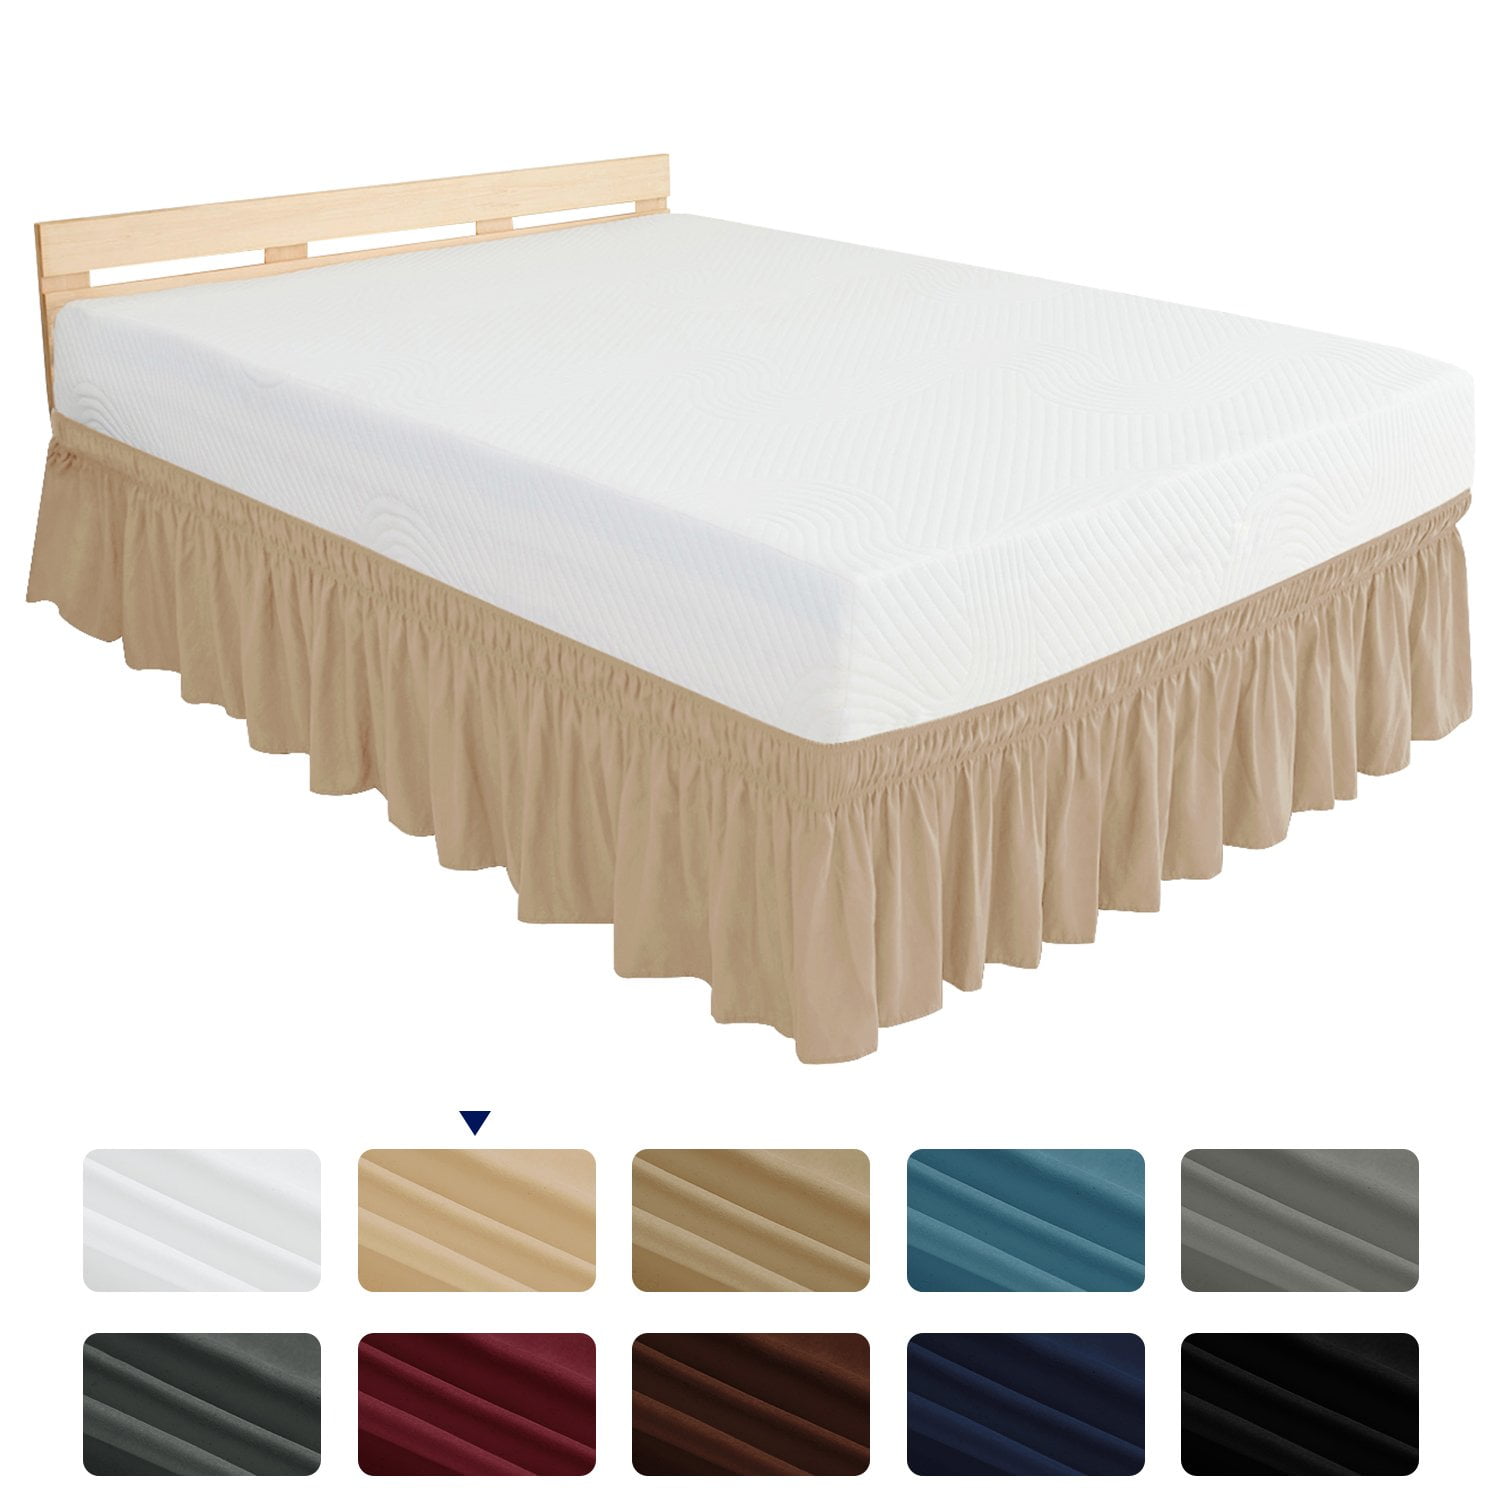 Nestl Bedding Pleated Bed Skirt Luxury Microfi Damask Dobby Stripe Bed Skirt 